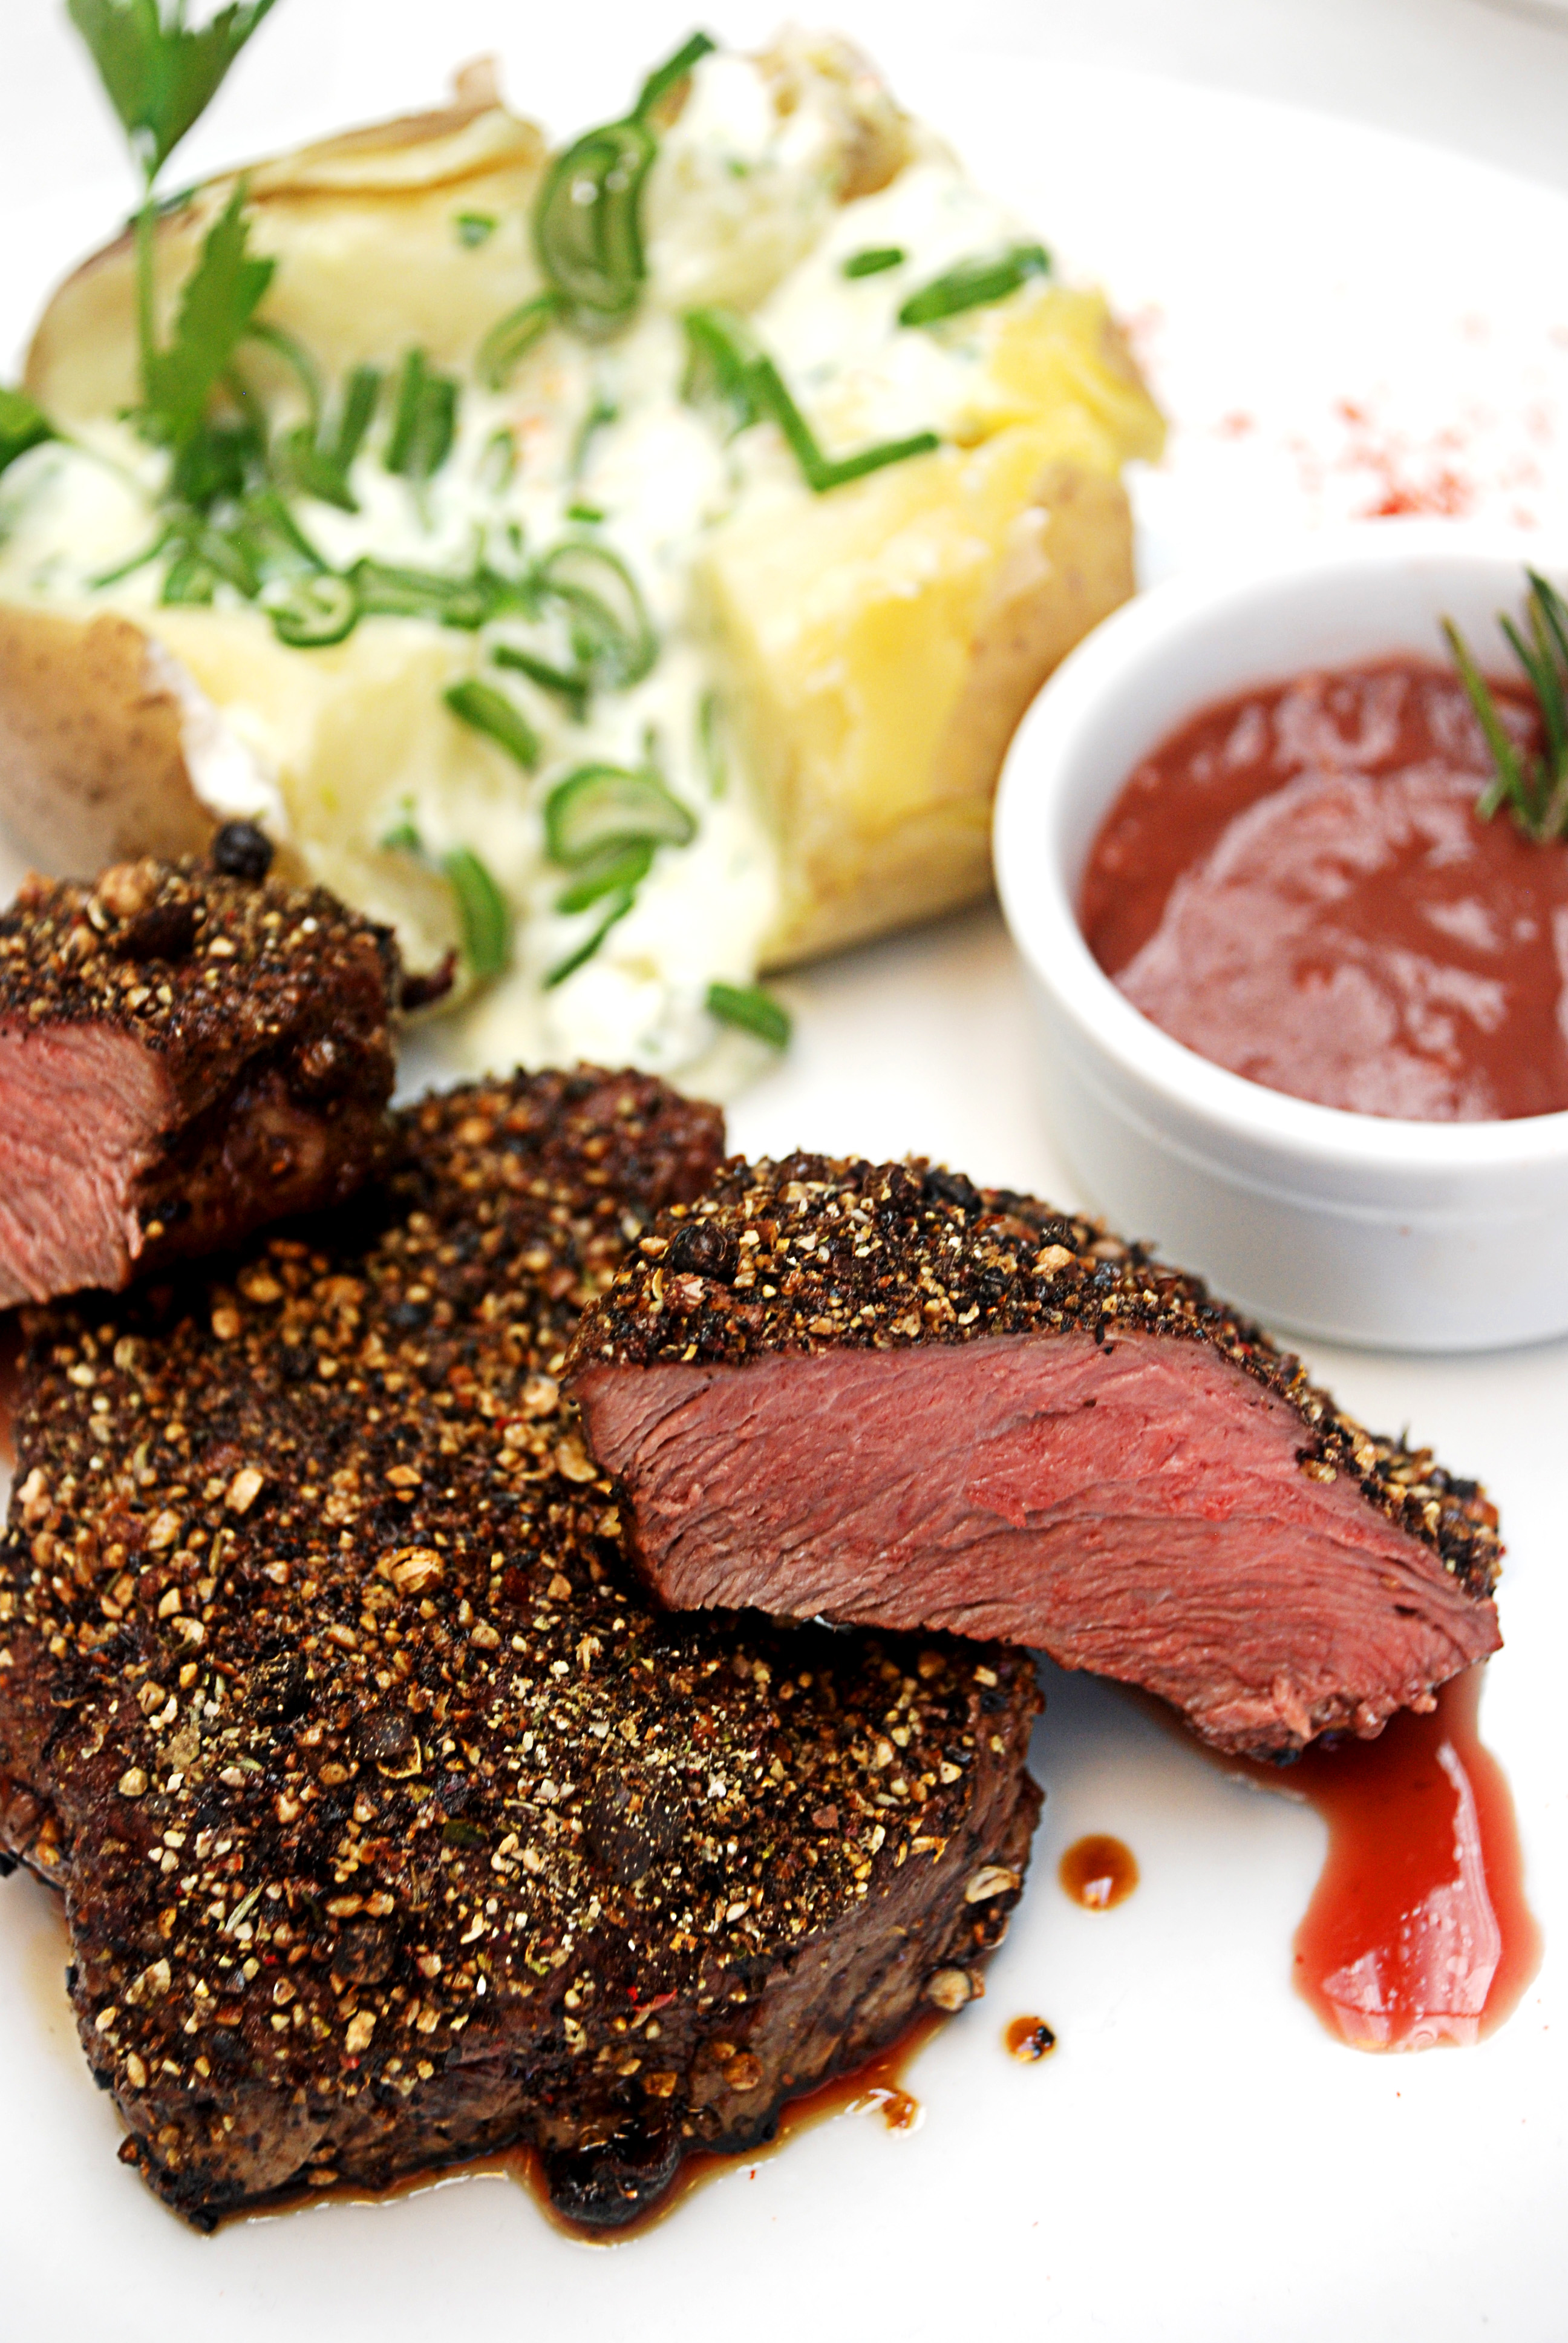 Platos con carne roja | La Cocina